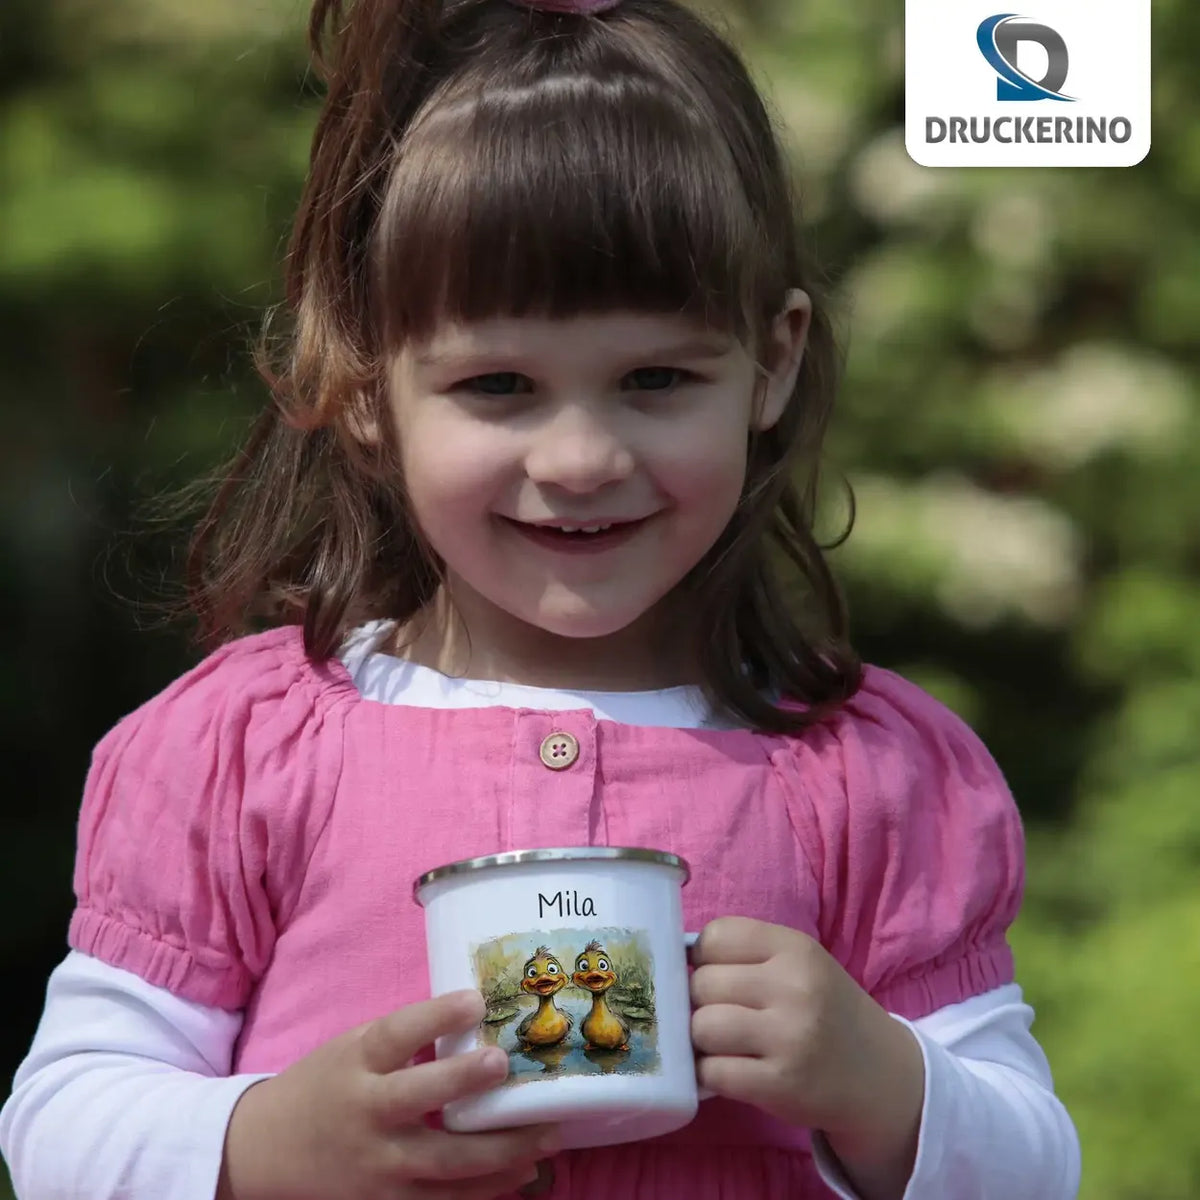 Quitschvergnügte Entenfreunde Emaille Tasse für Kinder personalisiert Emailletasse Druckerino   